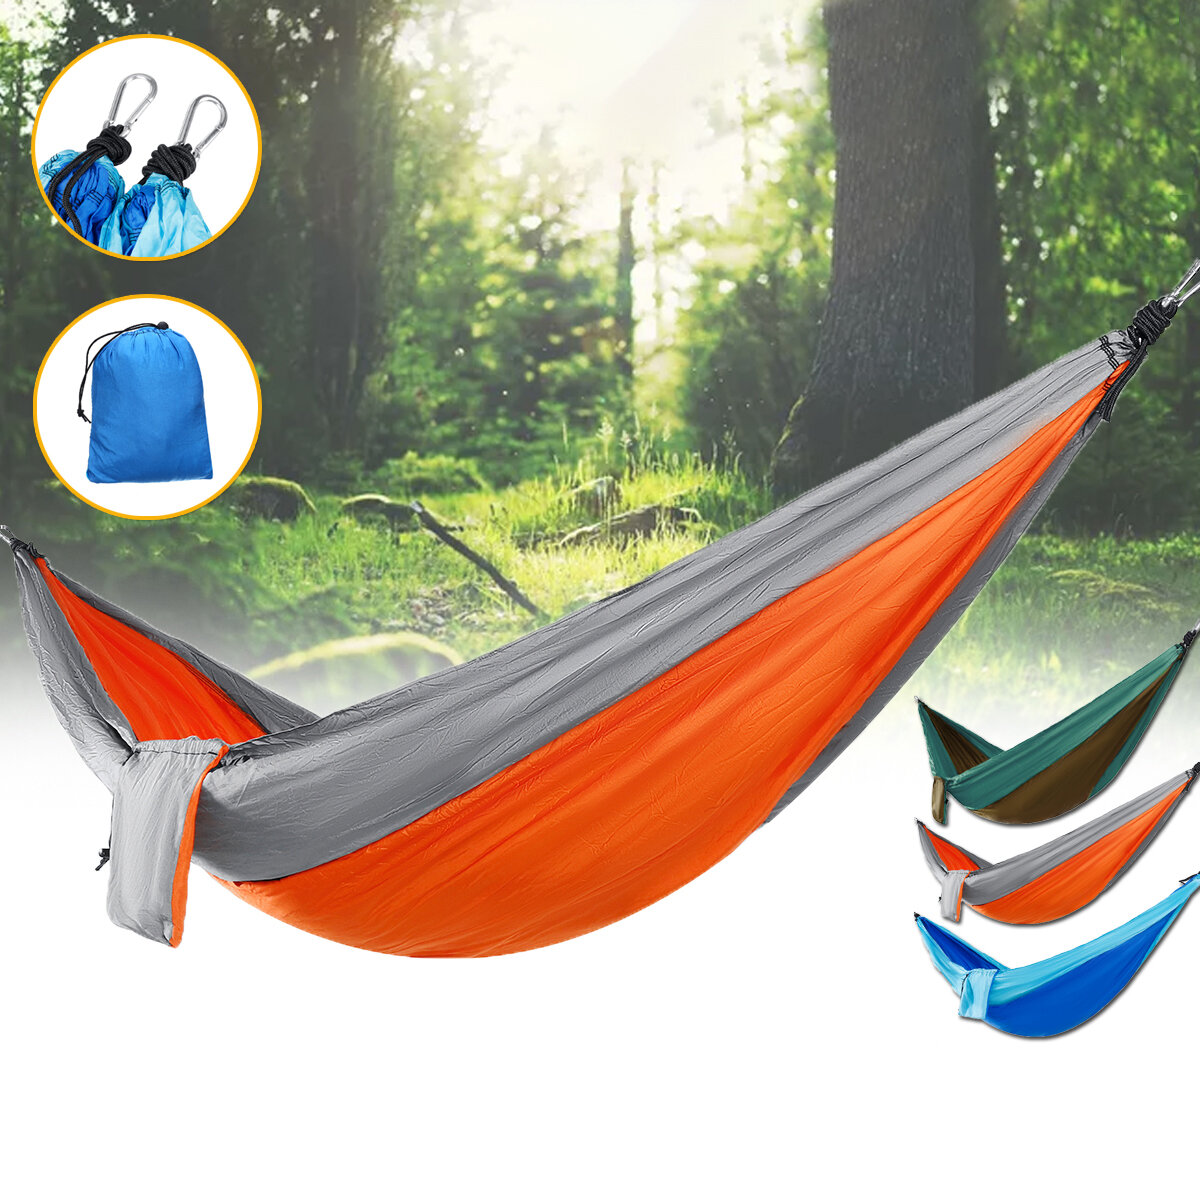 IPRee® Doppel-Personen-Hängematte aus Nylon Schaukelbett für Outdoor-Camping und Reisen mit einer maximalen Belastung von 300 kg.